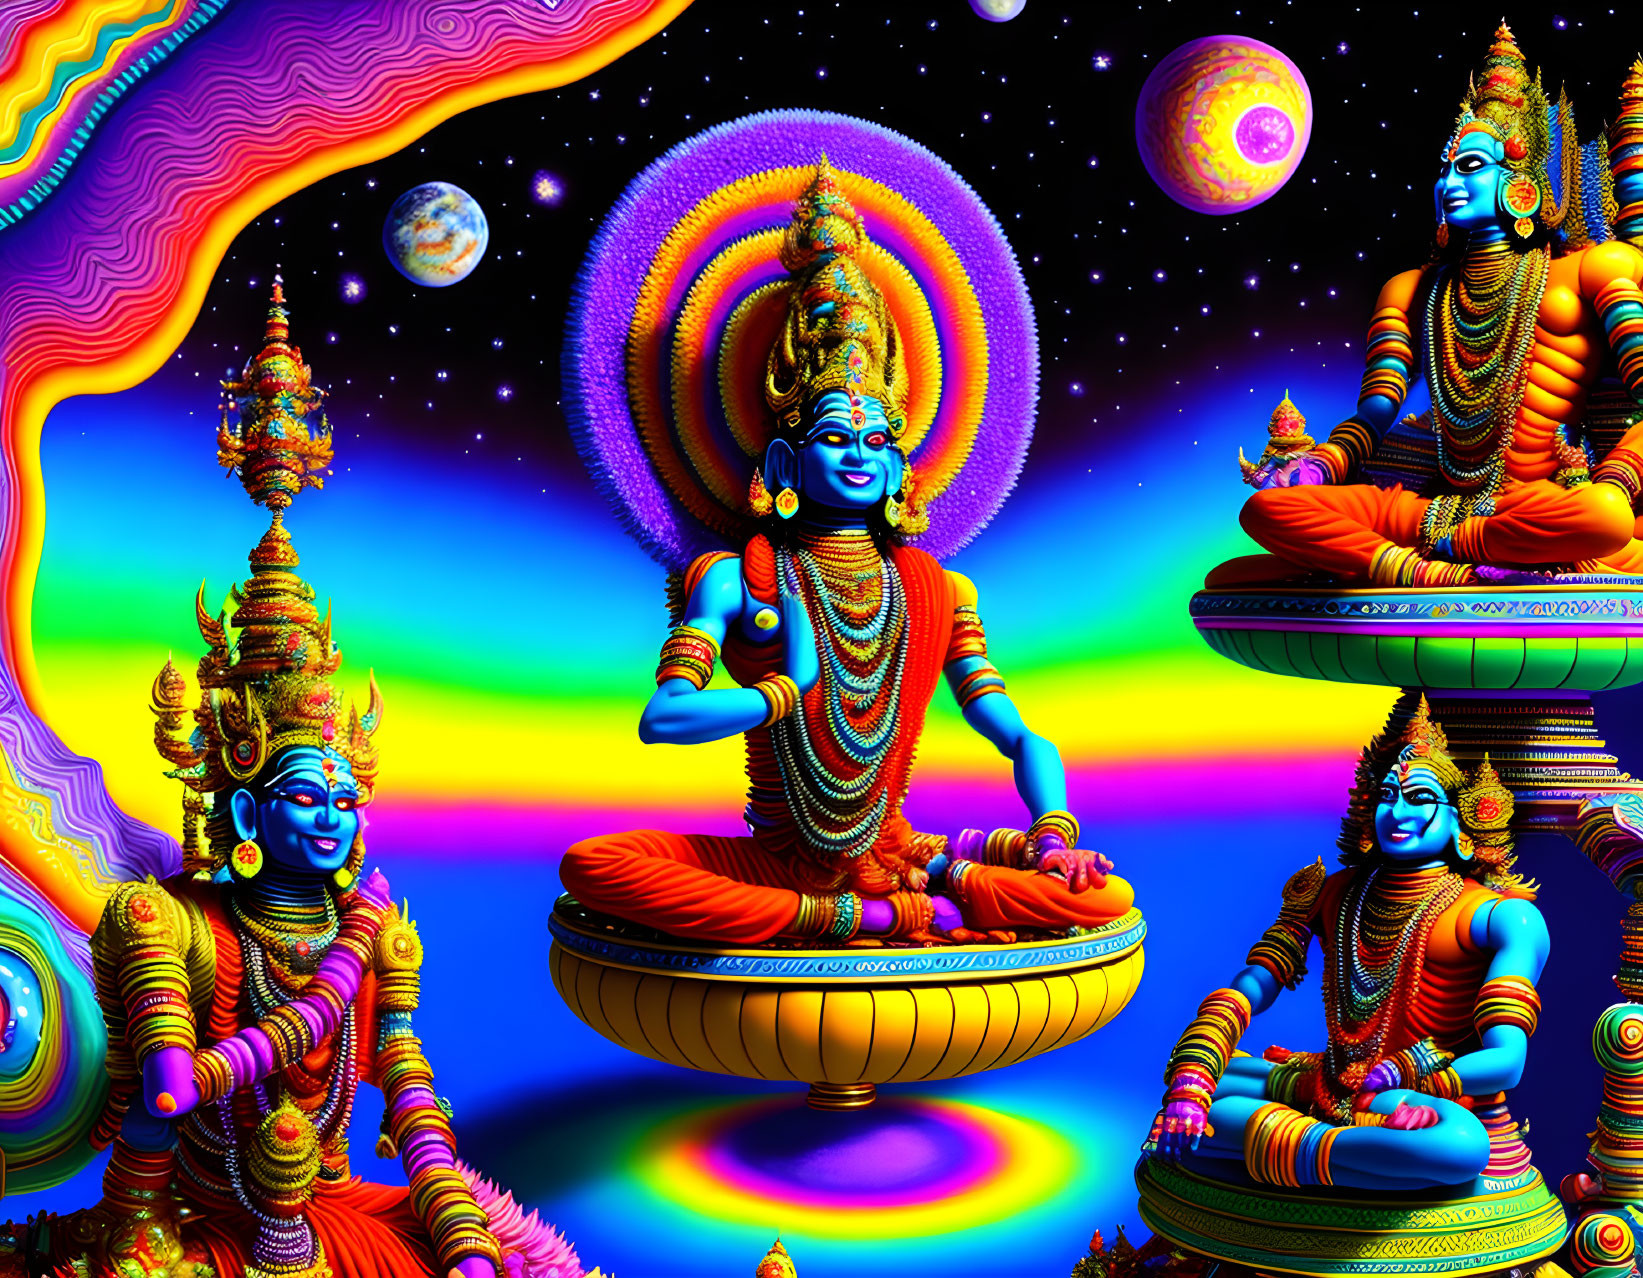 Blue-skinned Hindu deity in ornate attire on cosmic backdrop